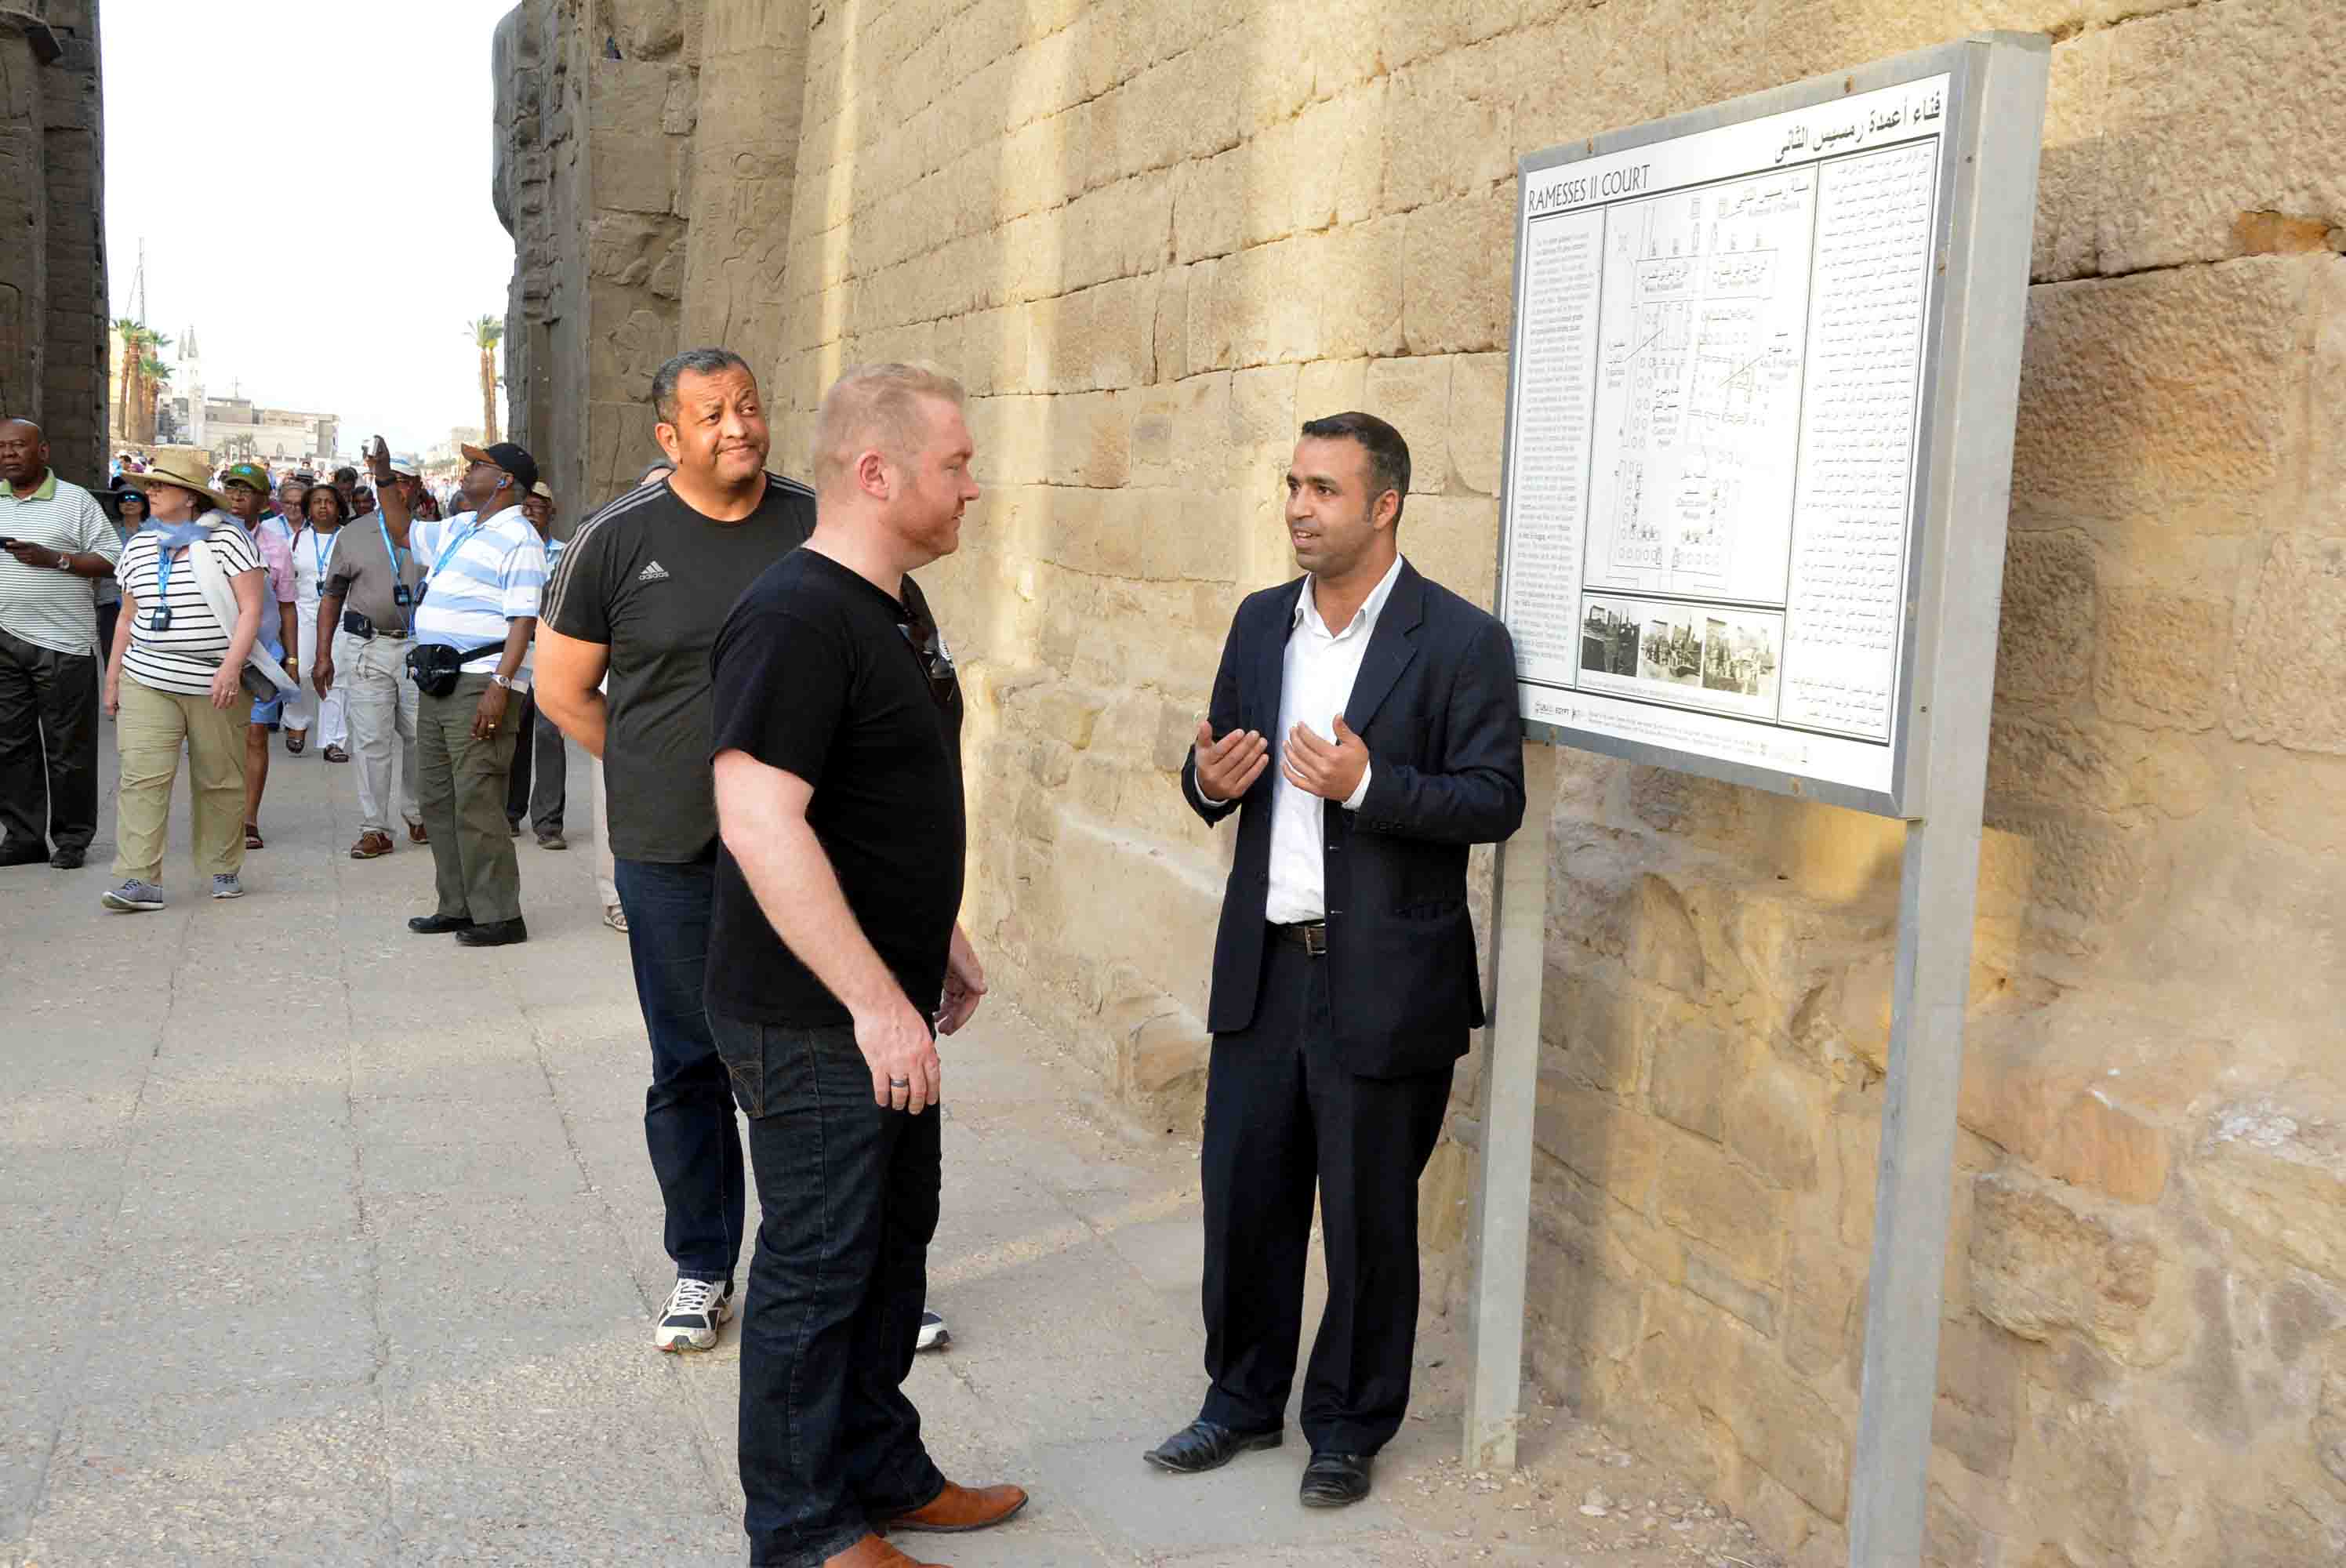 سفير نيوزلندا بالقاهرة يواصل جولاته السياحية بمعابد ومقابر الأقصر الفرعونية (4)